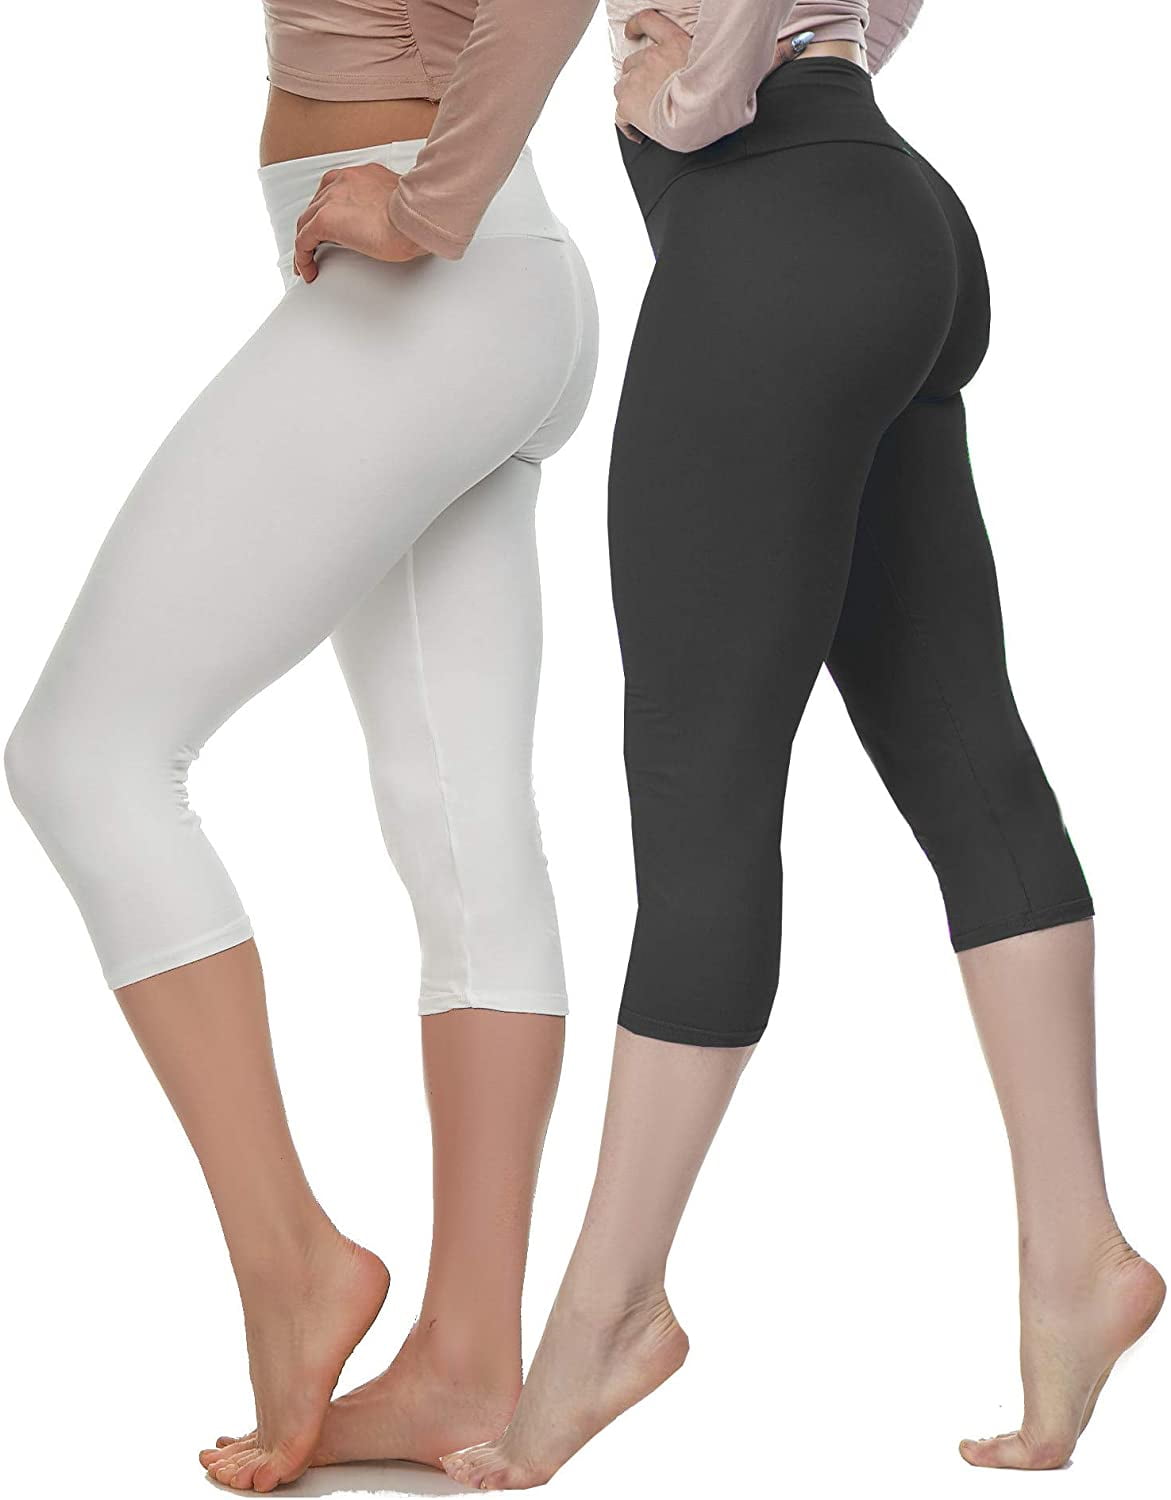 LMB Capri Leggings for Women Buttery Soft Polyester Fabric, Black